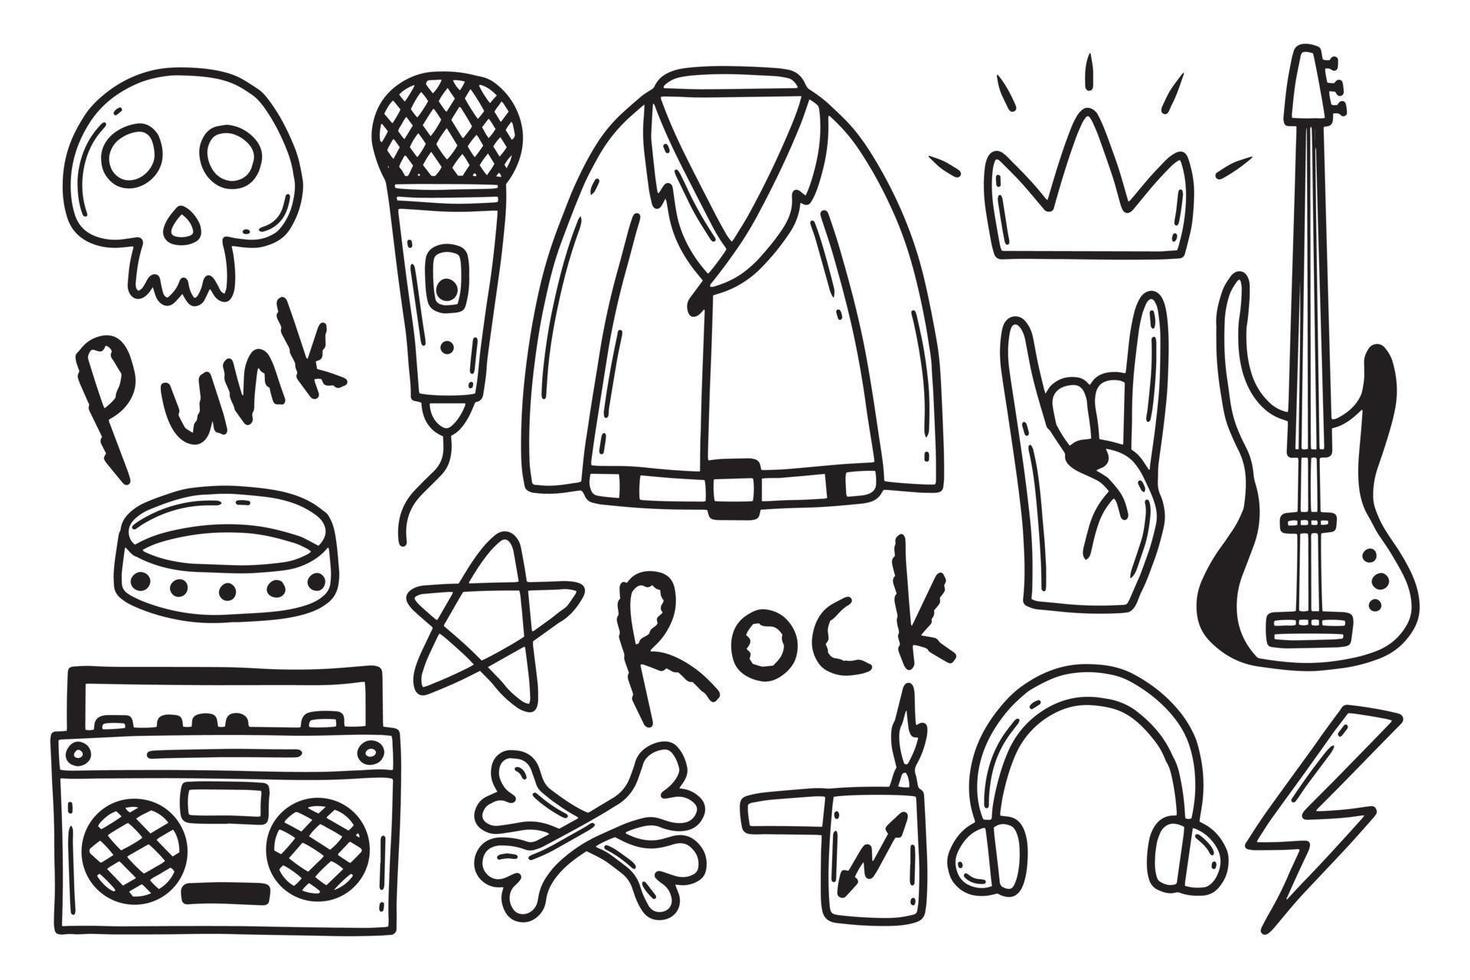 rock n roll, conjunto de doodle de música punk. grafite, adesivo desenhado à mão de tatuagem, texto, caveira, coração, skate, mão de gesto. ilustração em vetor grunge rock.